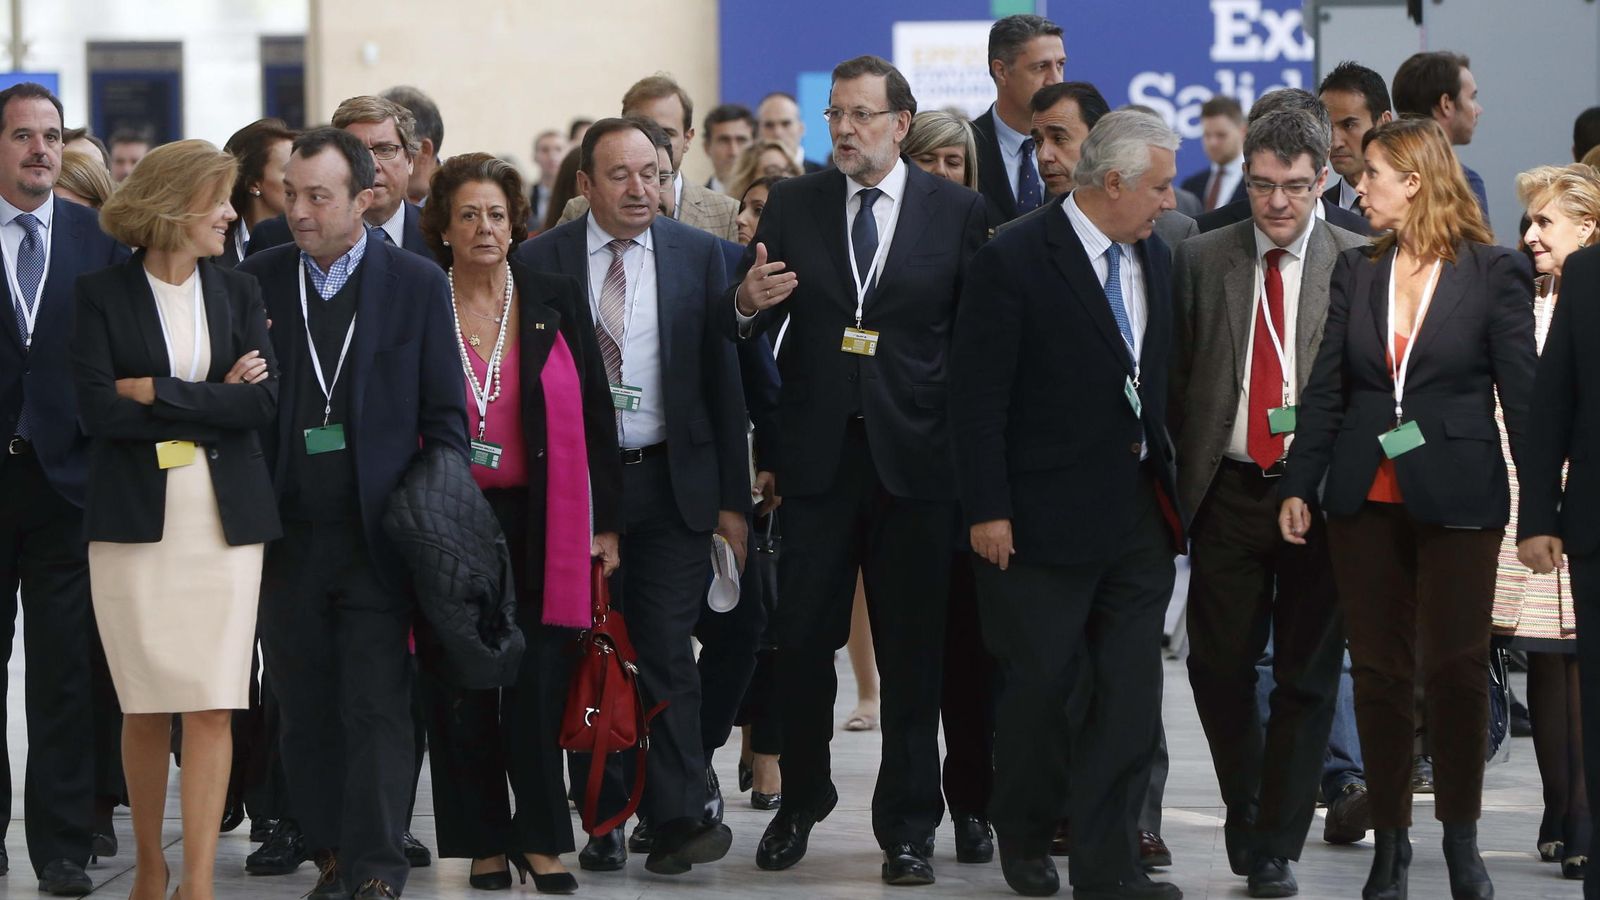 Foto: El presidente del Gobierno, Mariano Rajoy, acompañado de dirigentes del PP de diferentes regiones, a su llegada al Congreso del PPE. (EFE)